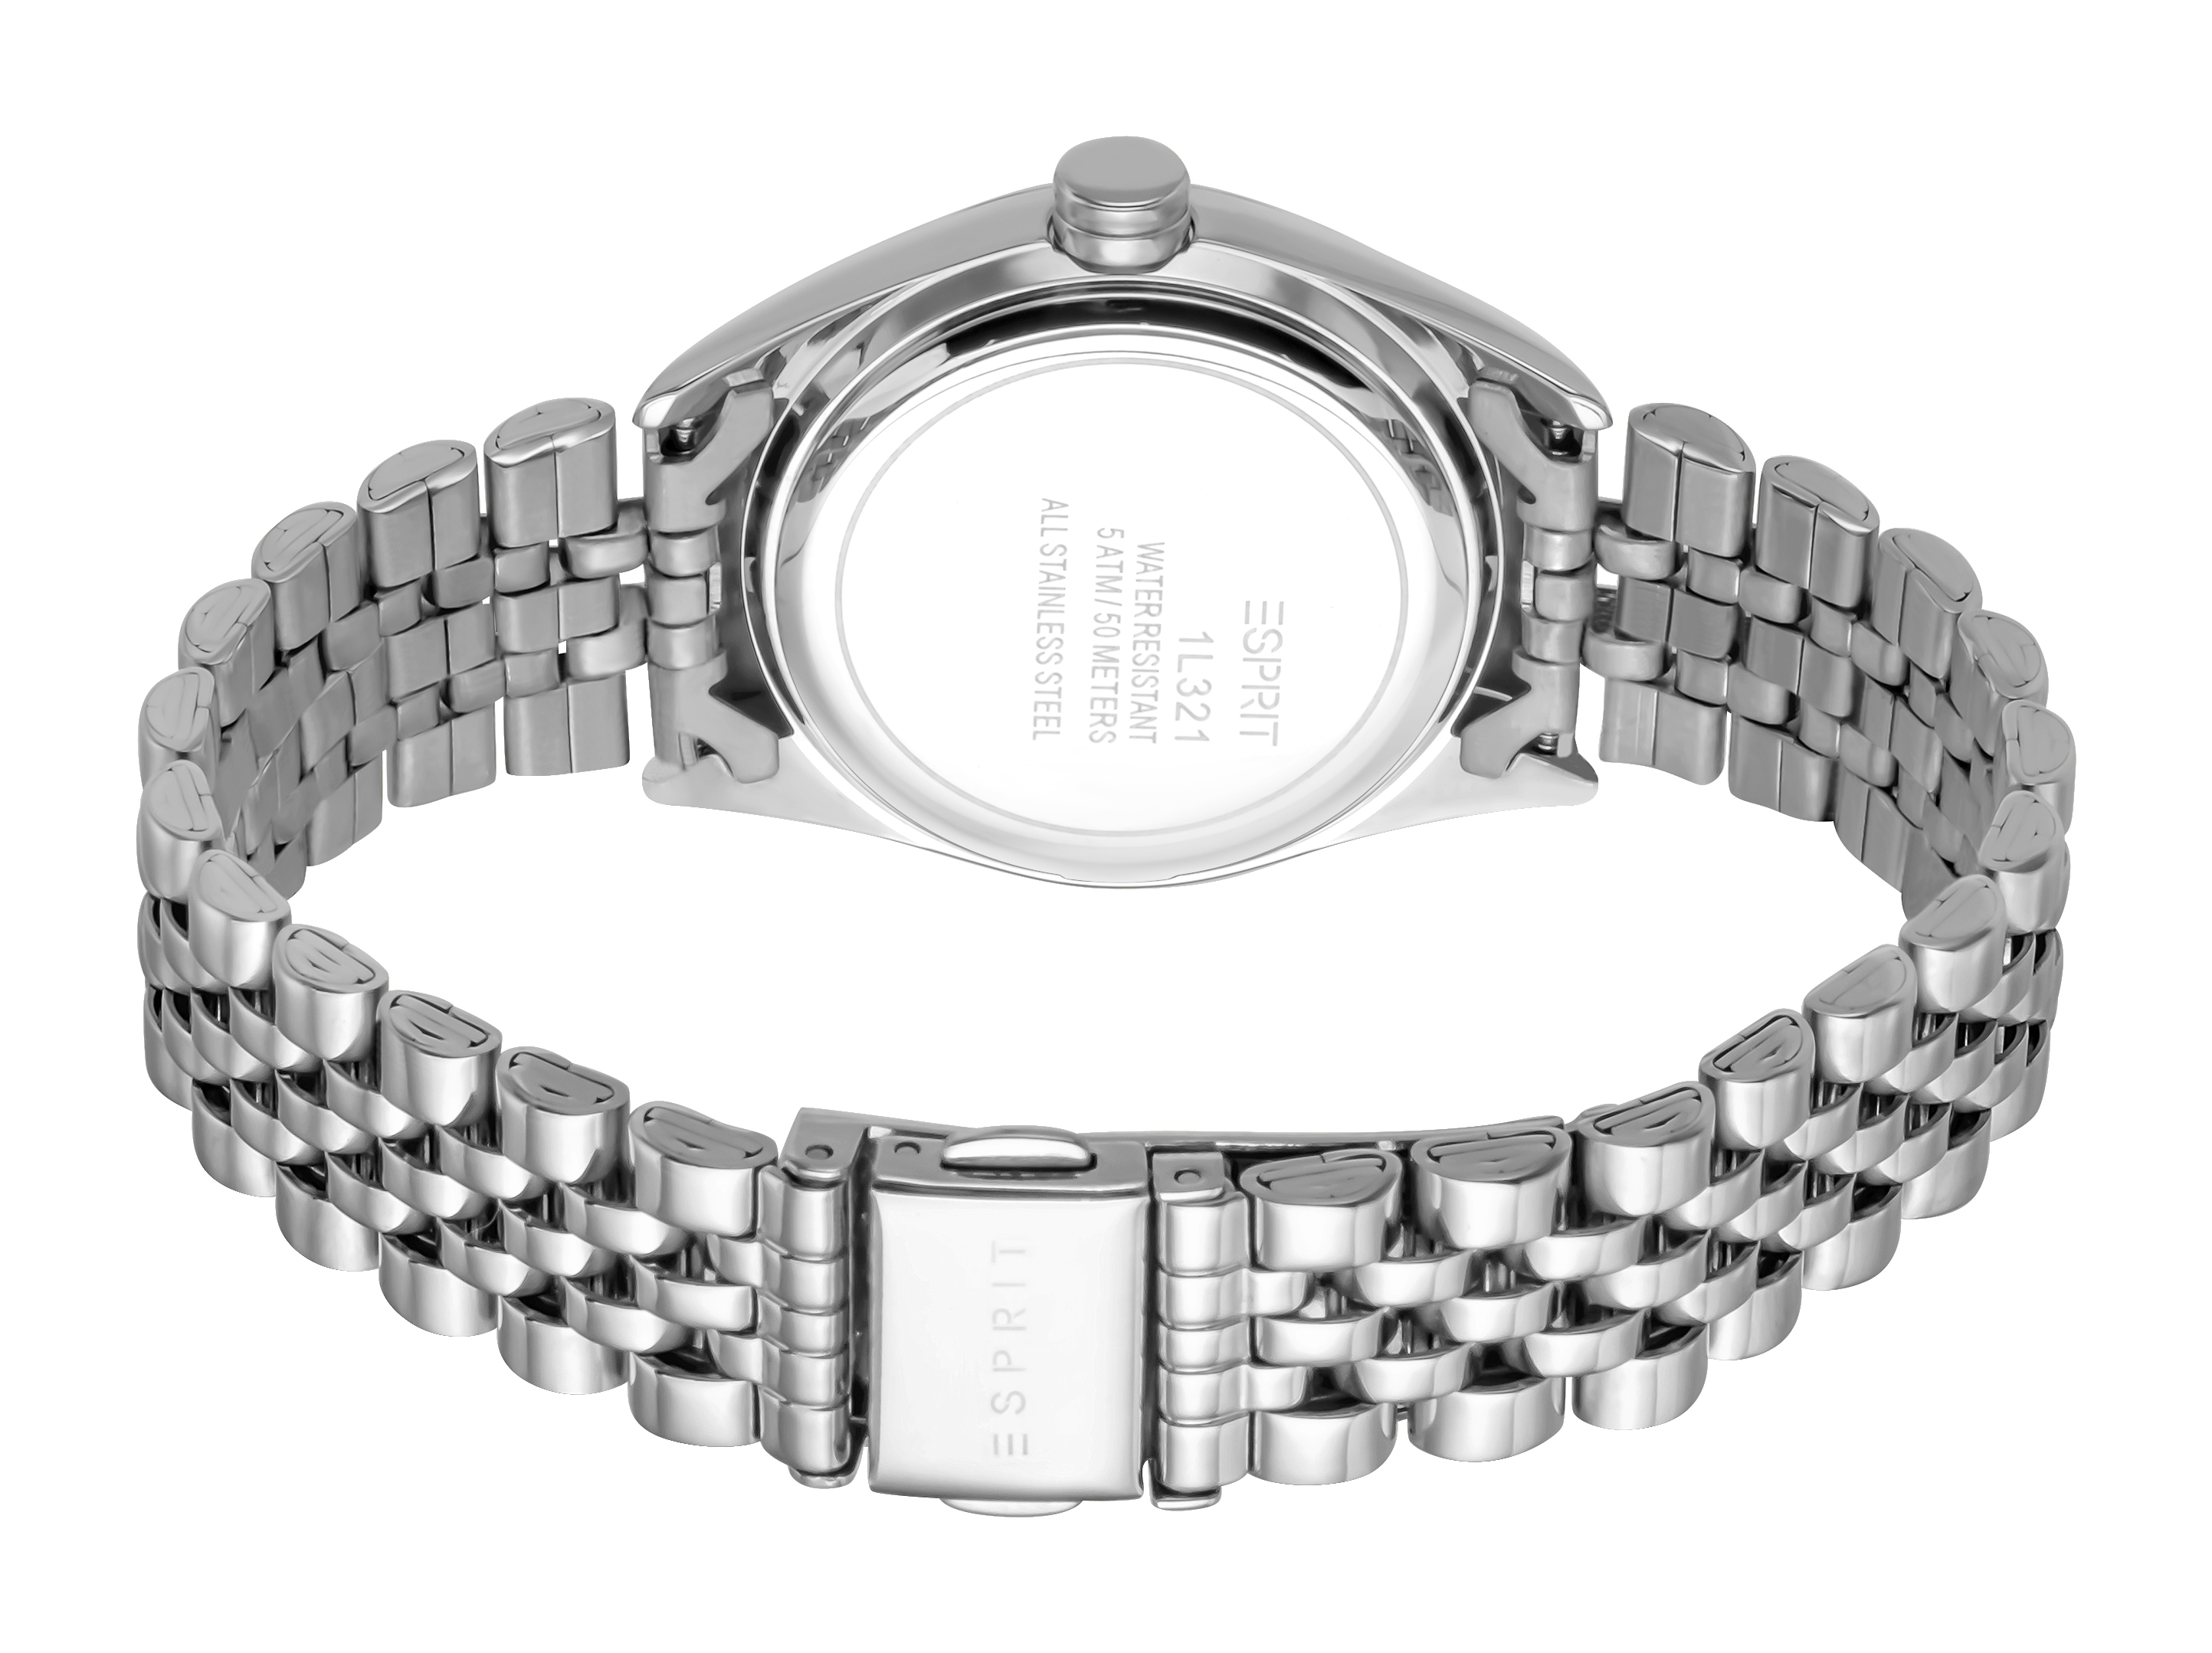 Унисекс часы ESPRIT Esprit ES1L321M0045